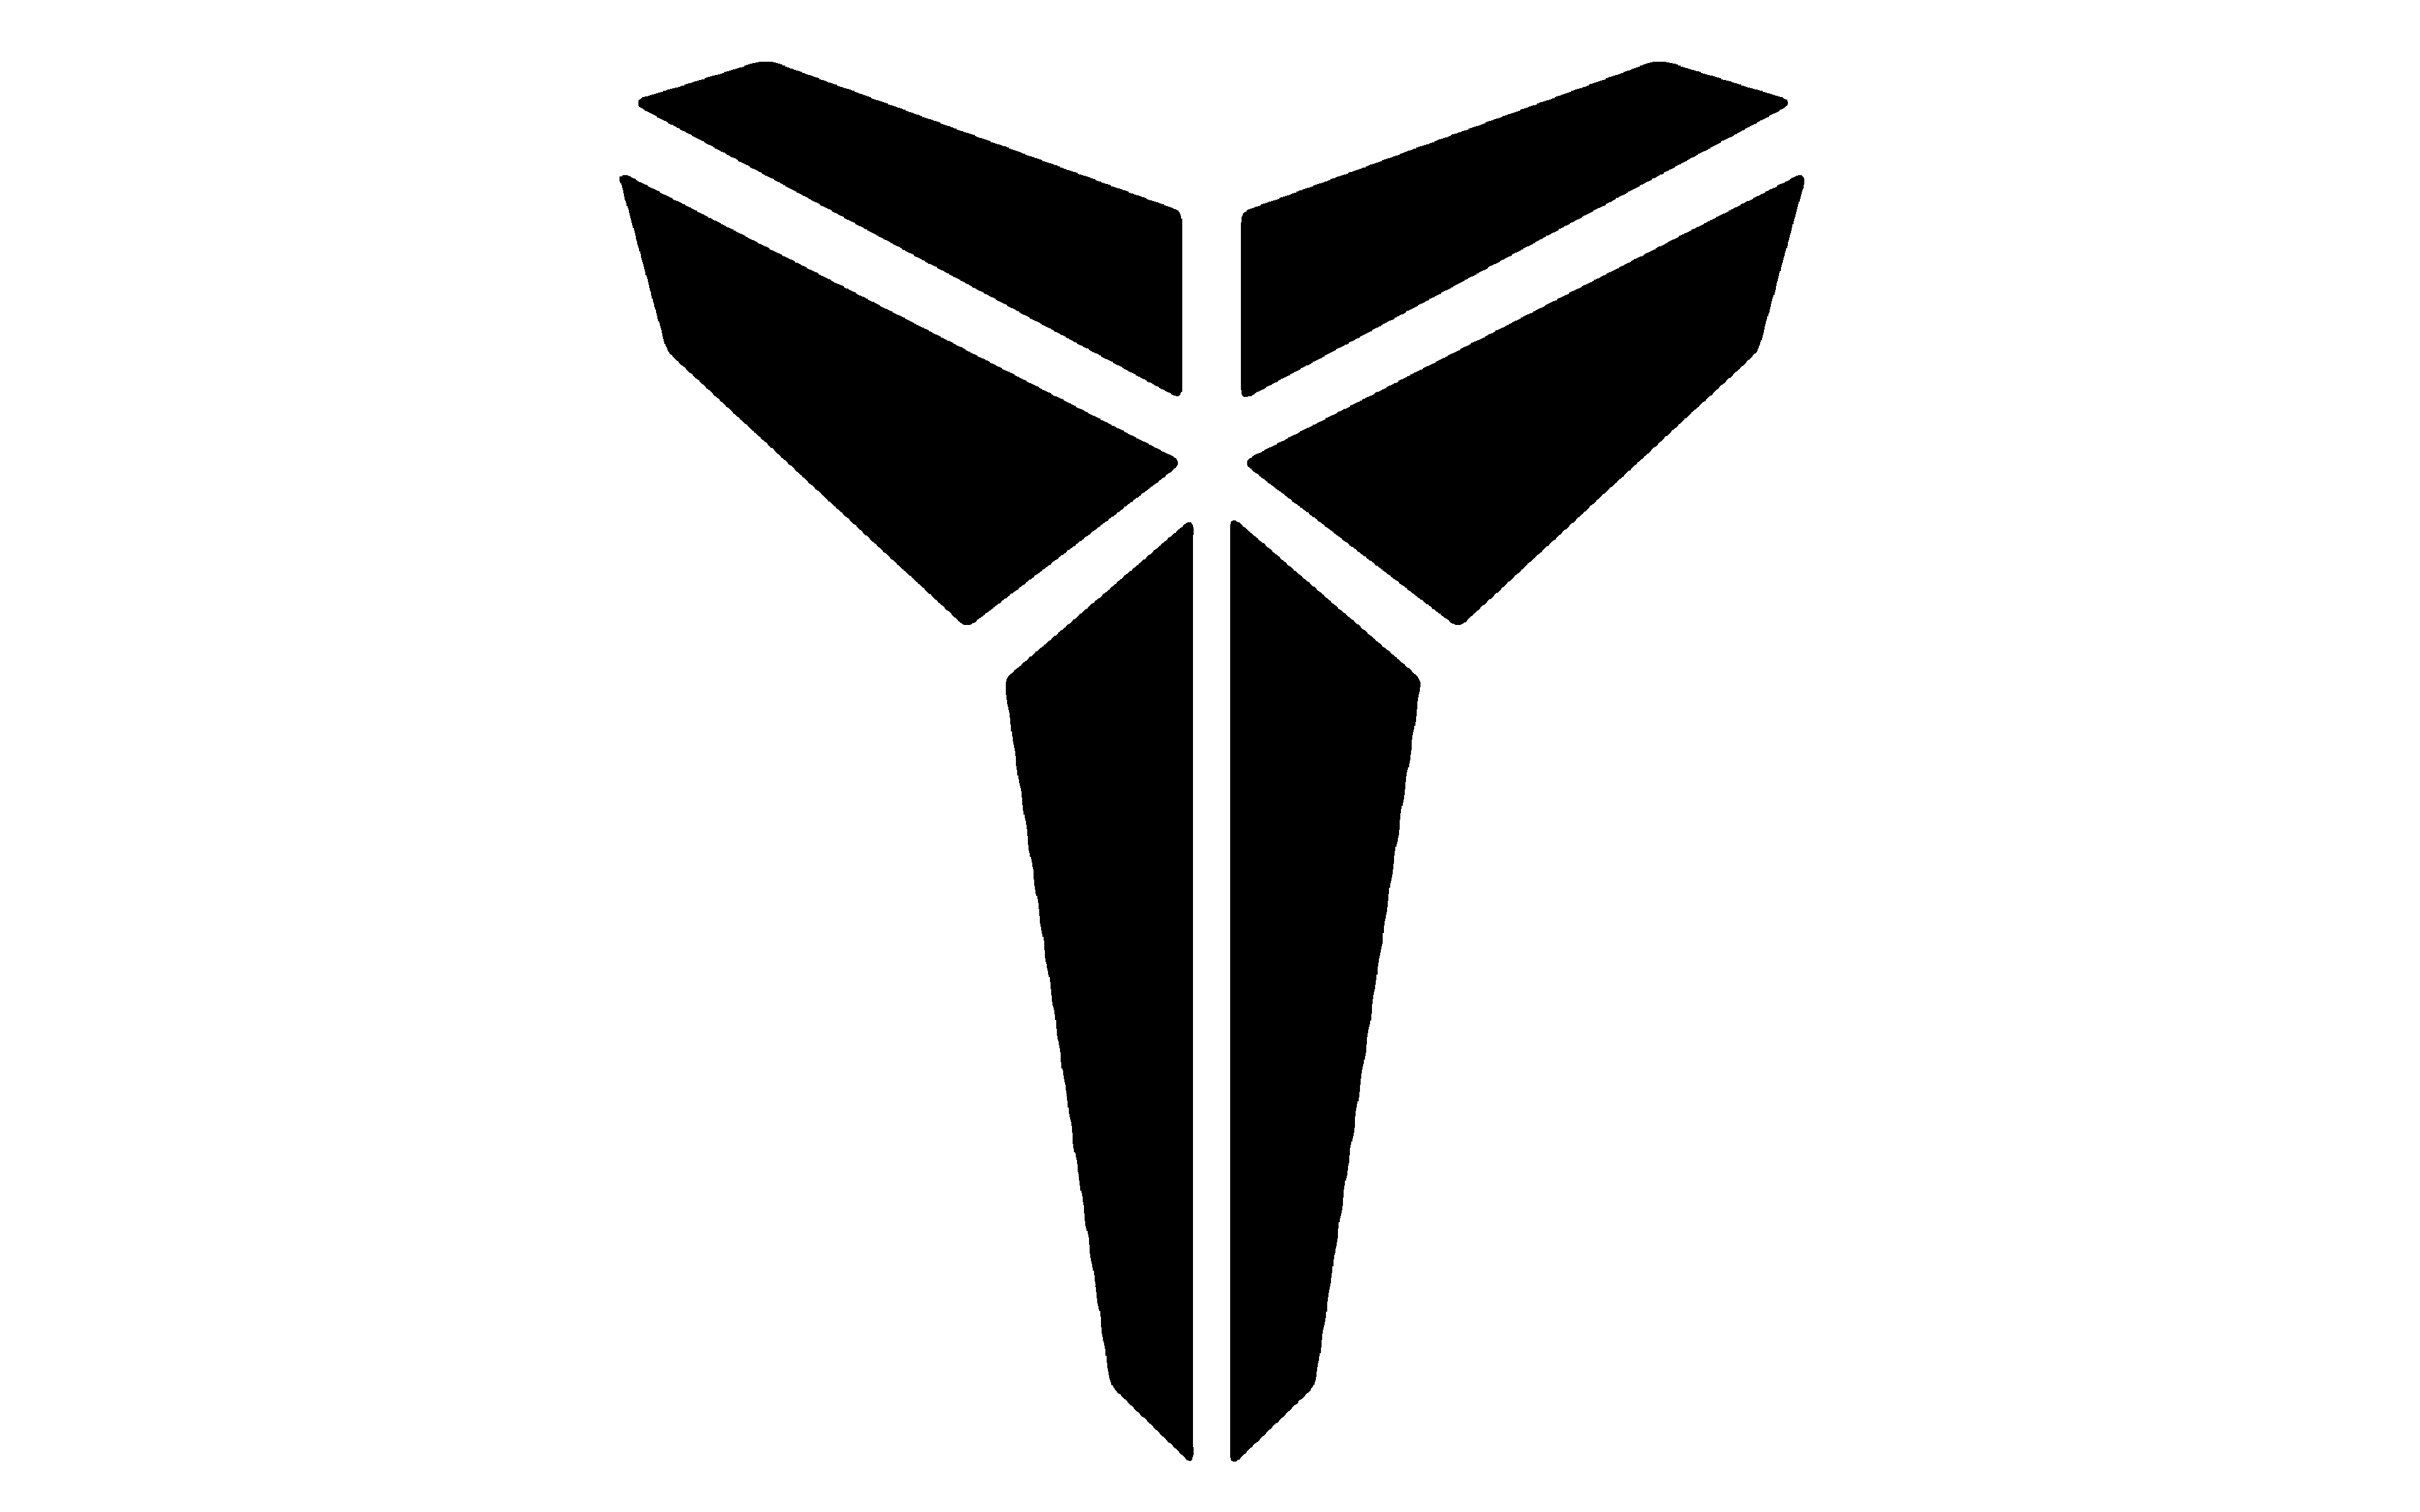 Kobe Bryant Logo PNG Image Transparent PNG Free Download On SeekPNG ...